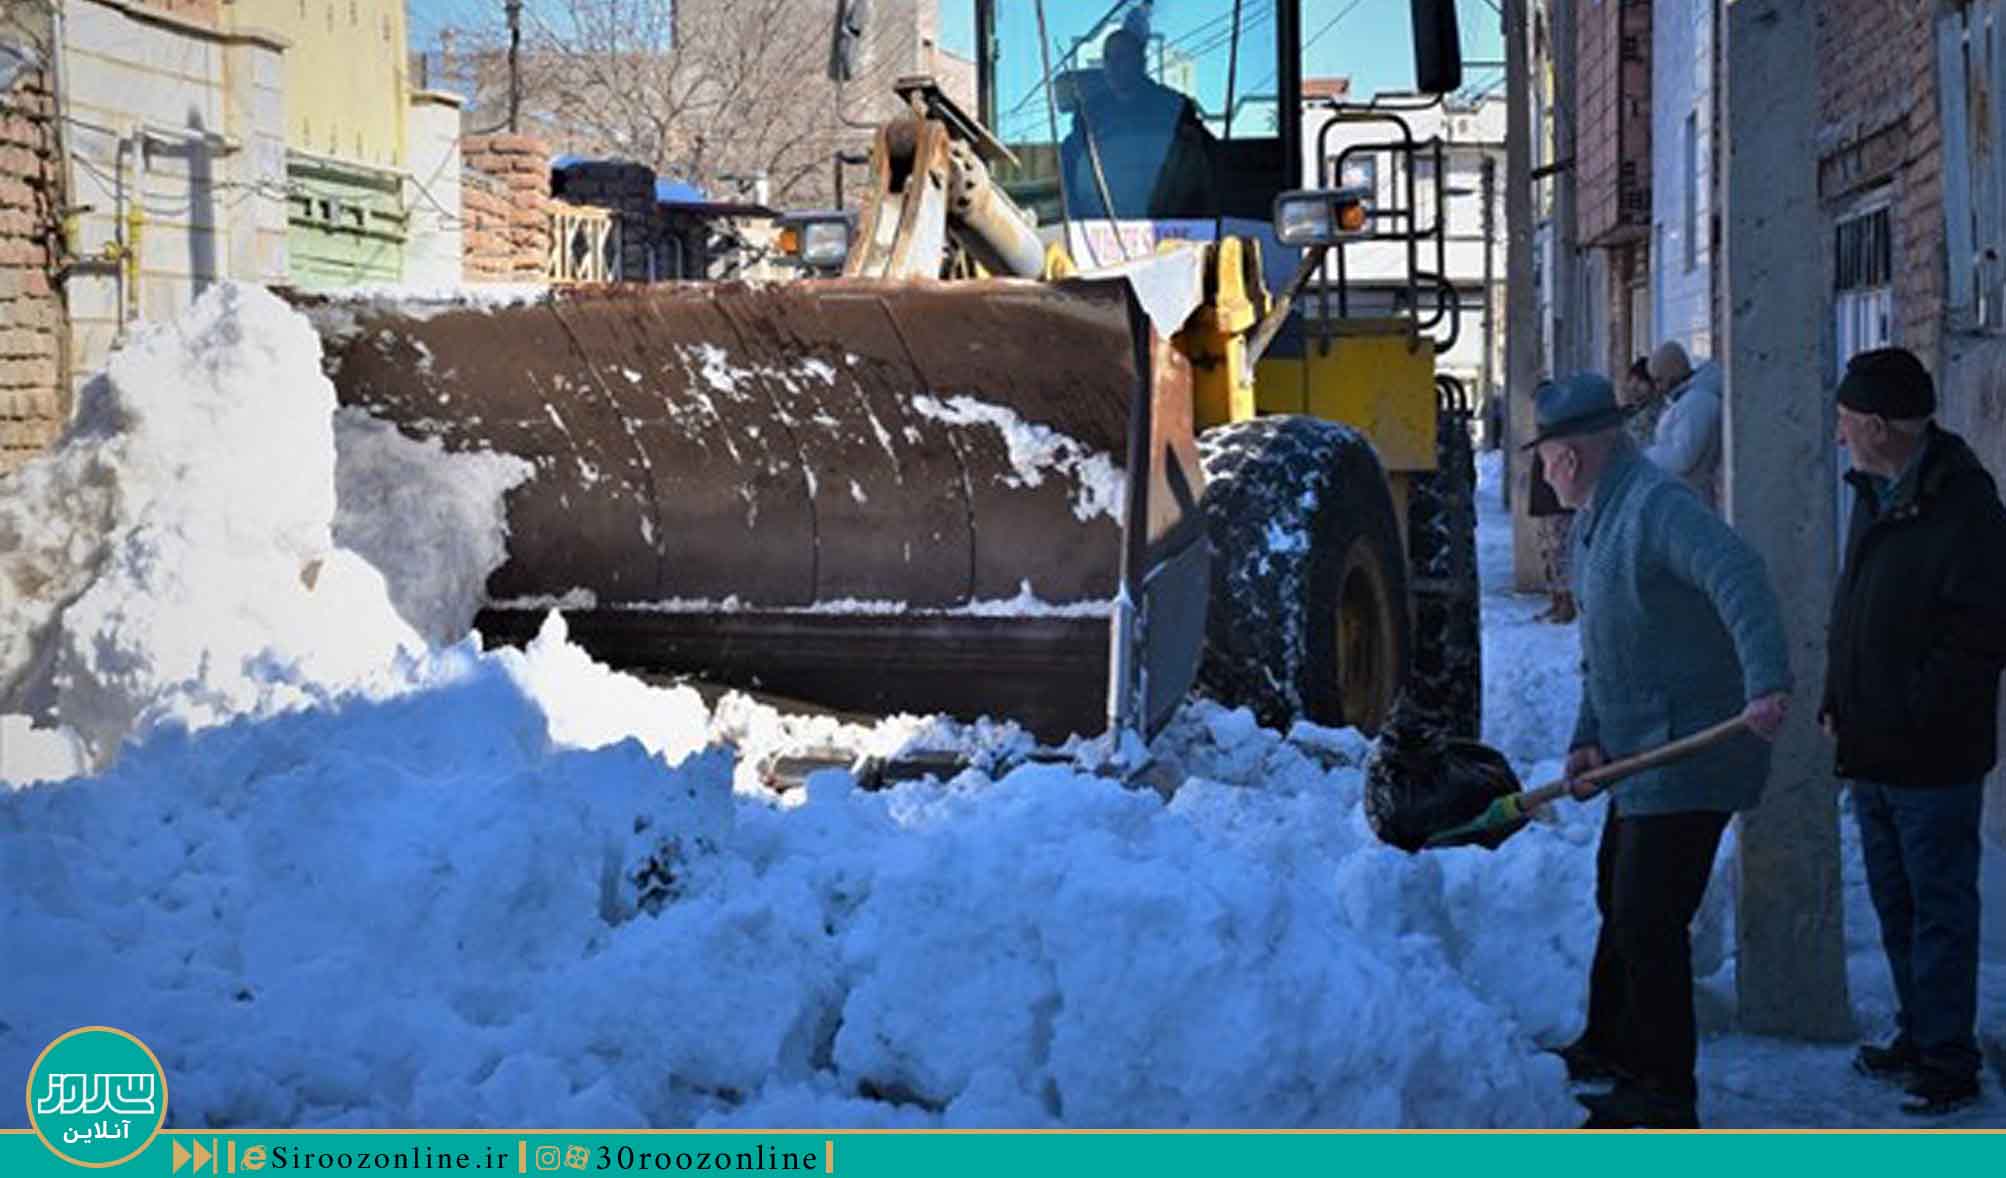 ضرورت تجهیز سیستم برف روبی در شهر اردبیل 